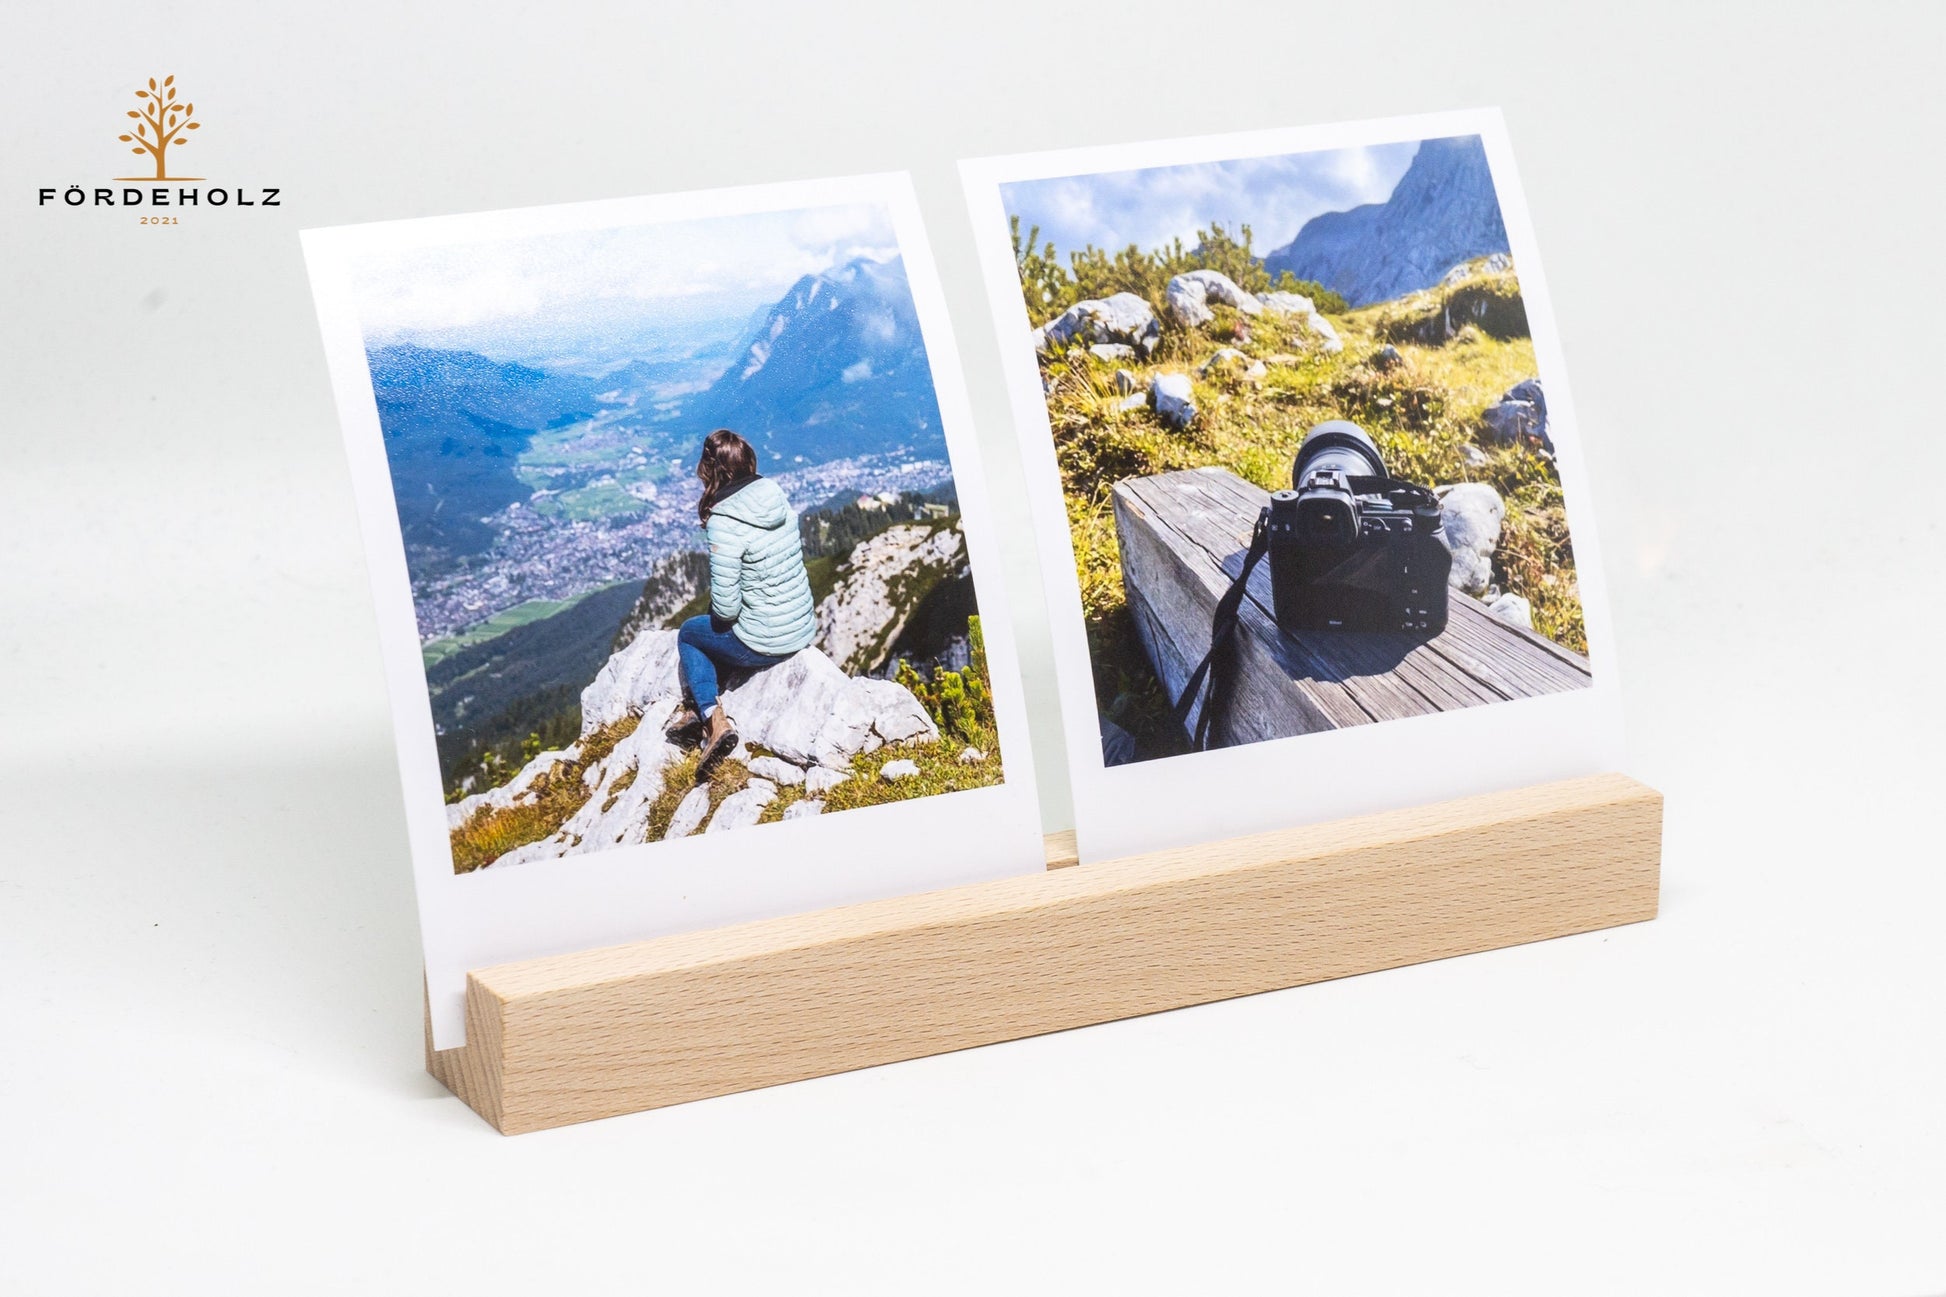 XL Foto- und Kartenhalter aus Holz, Holzkartenhalter, Kartenaufsteller, Buchenholz mit Wunschgravur